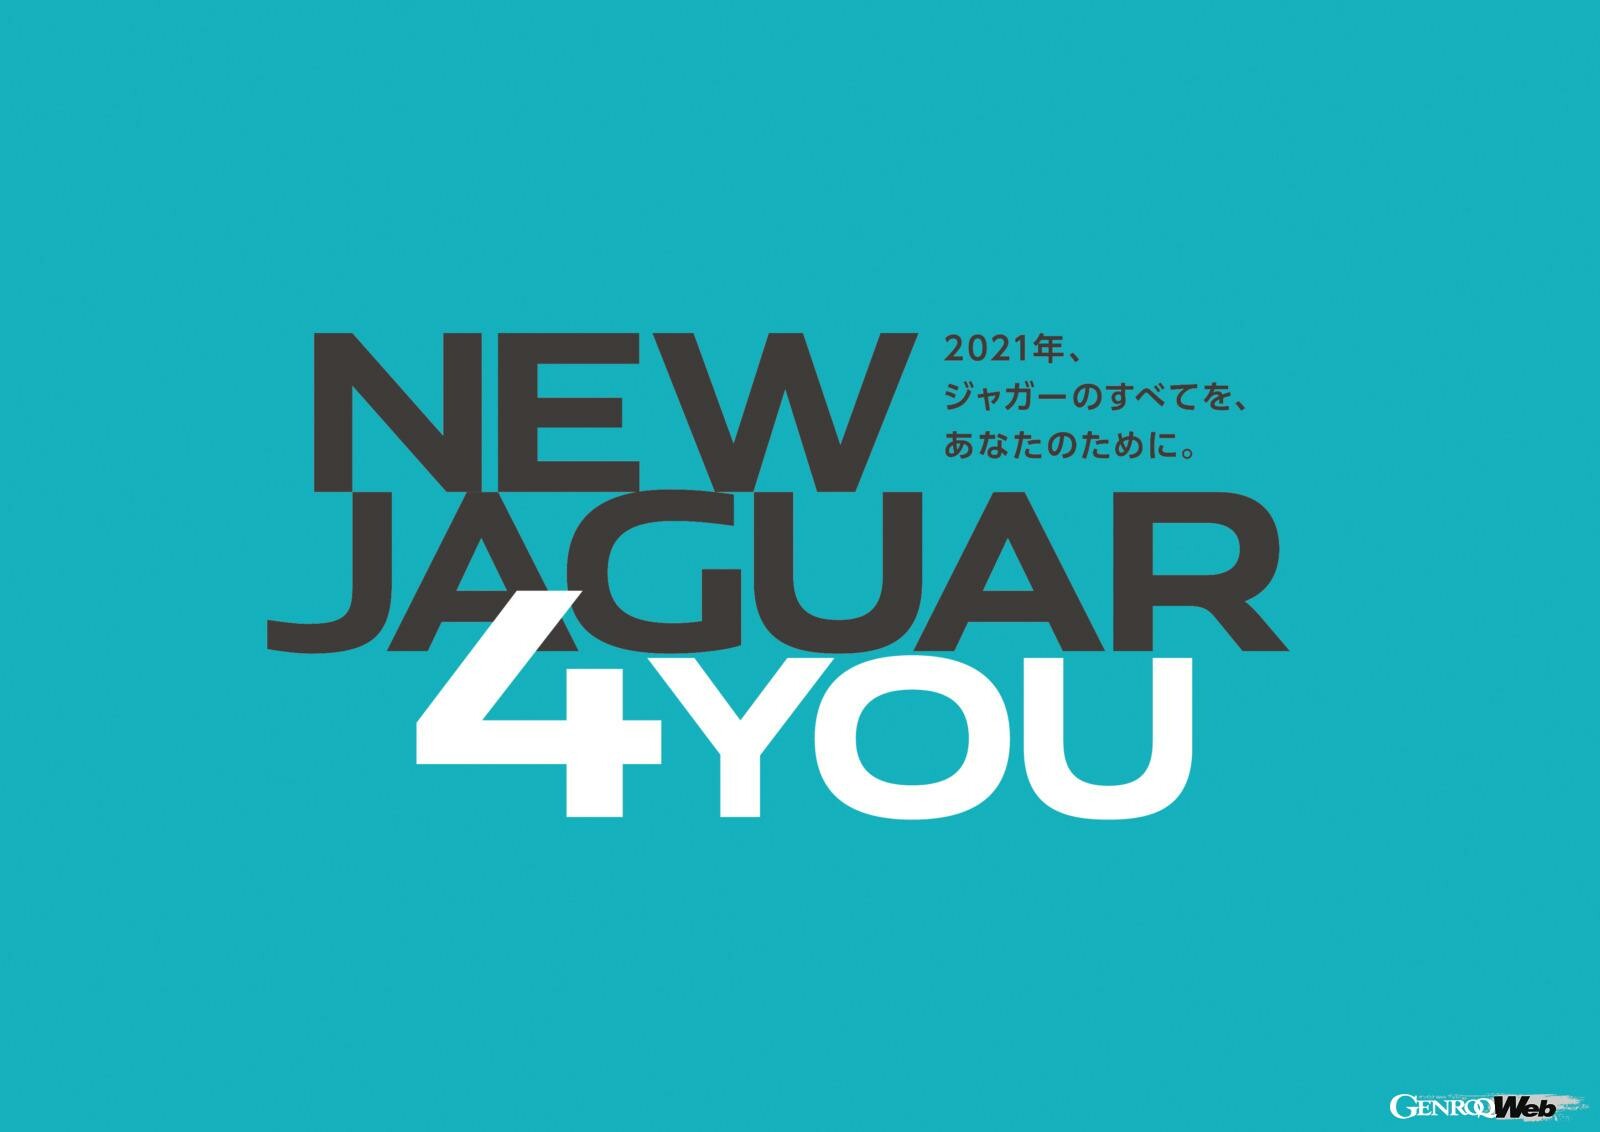 ジャガー初のファイナンス・プログラム「NEW JAGUAR FINANCE FOR YOU PROGRAM」導入開始